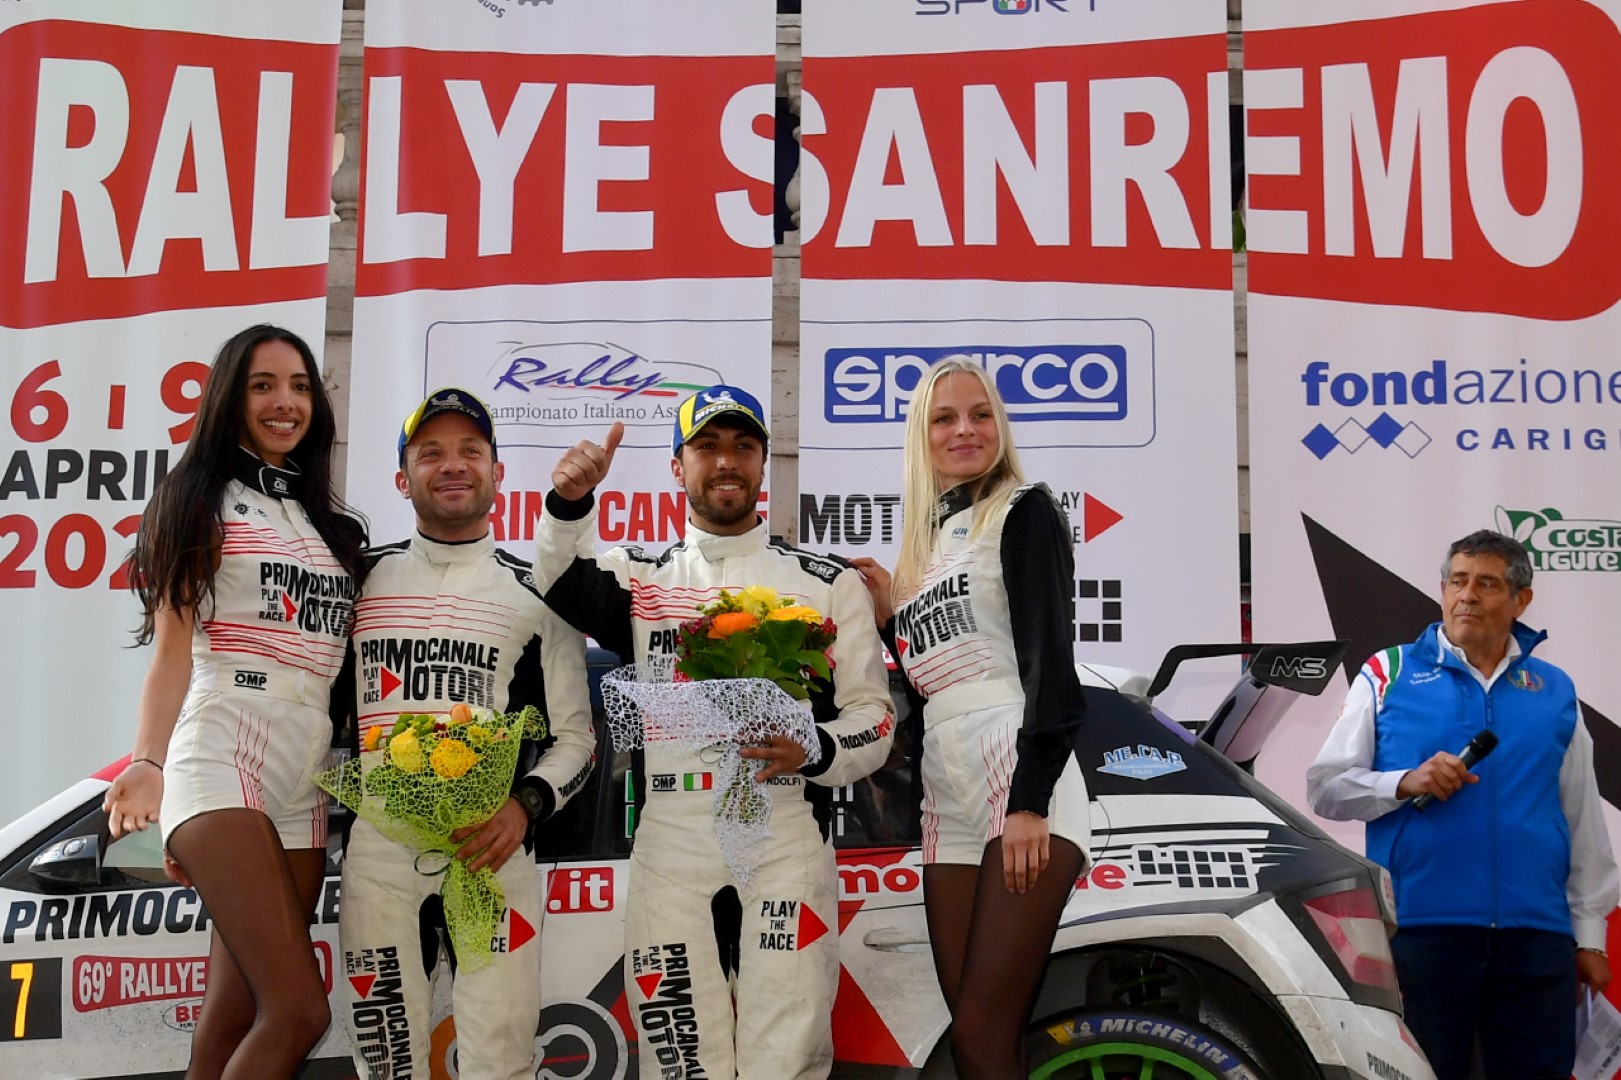 Rallye-Sanremo-2022---Podio02 (Large)